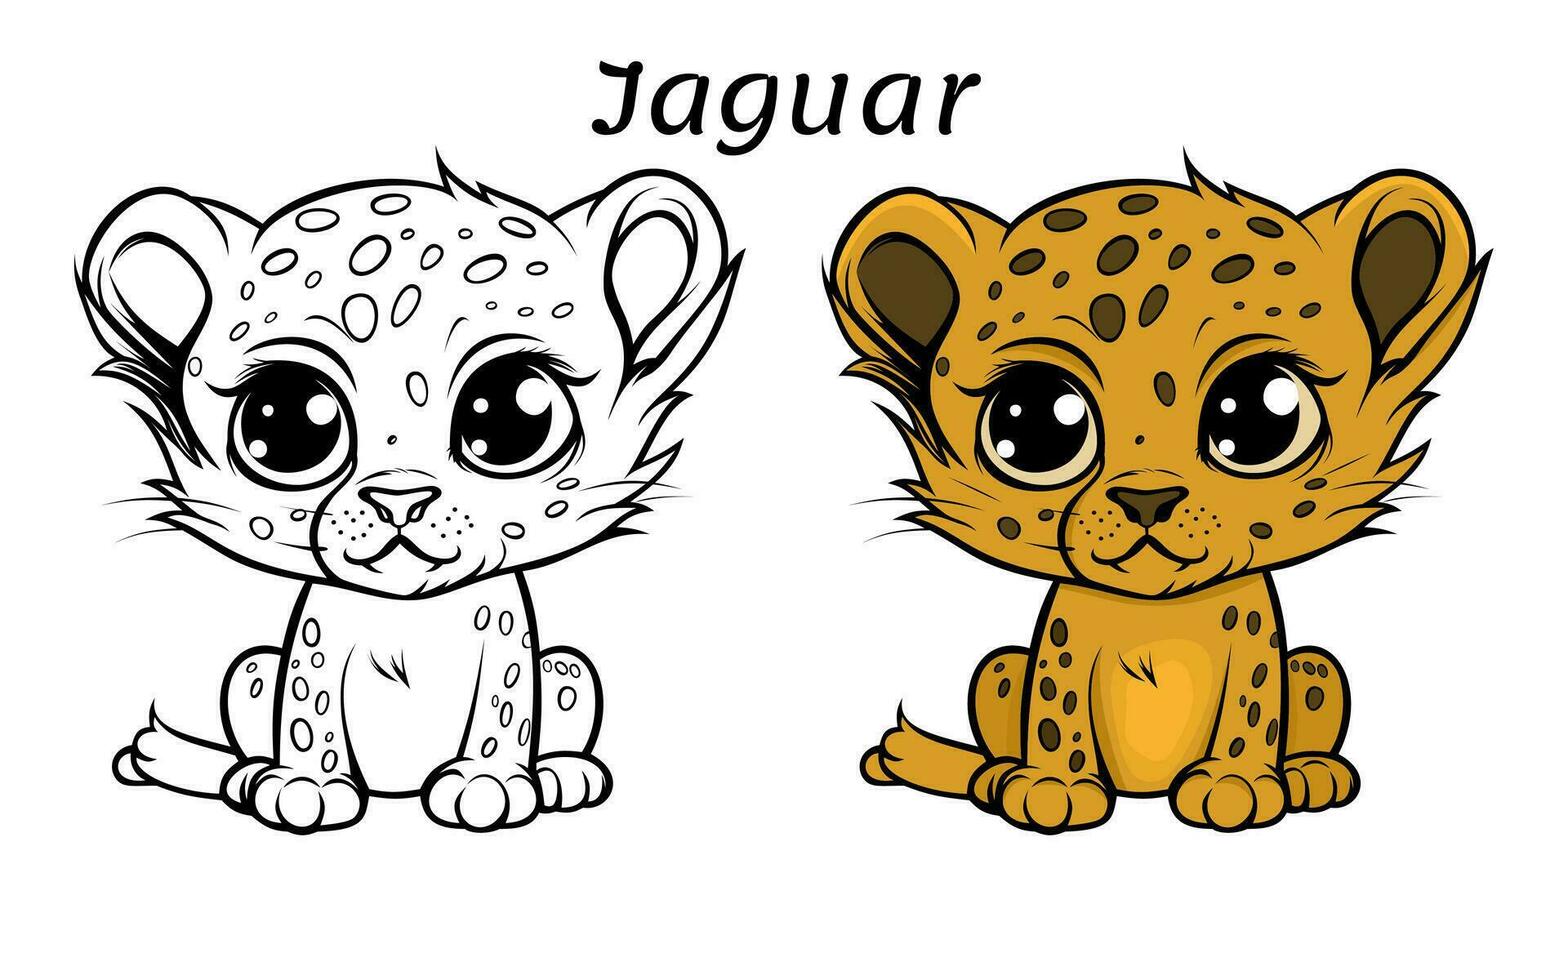 schattig jaguar dier kleur boek illustratie vector